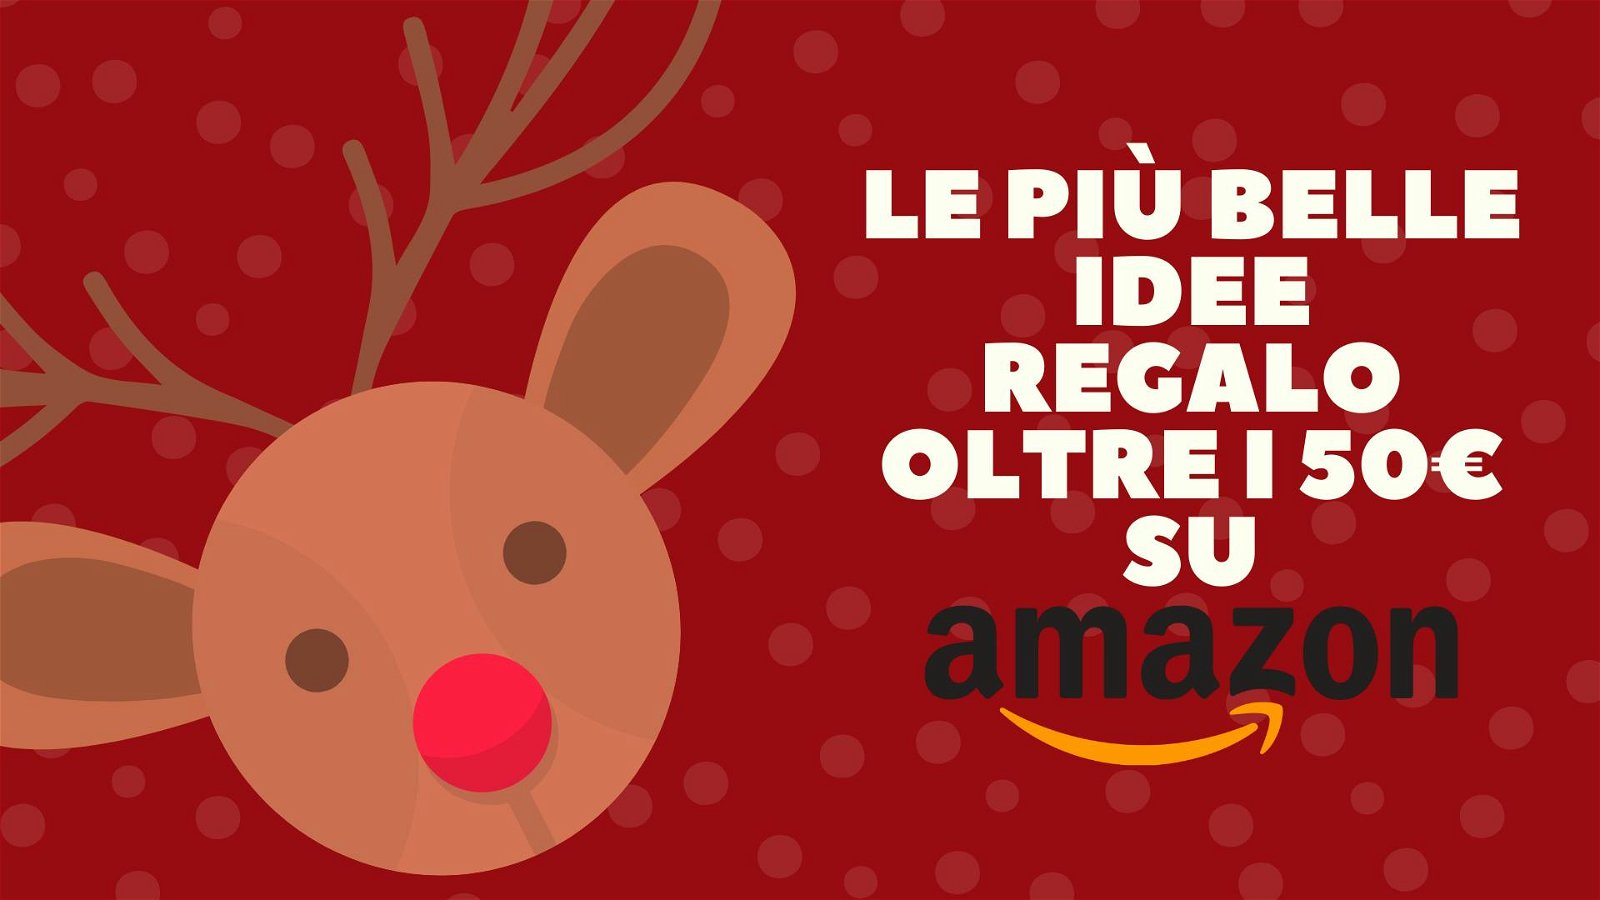 Immagine di Le più belle idee regalo oltre i 50€ da Amazon | Natale 2022